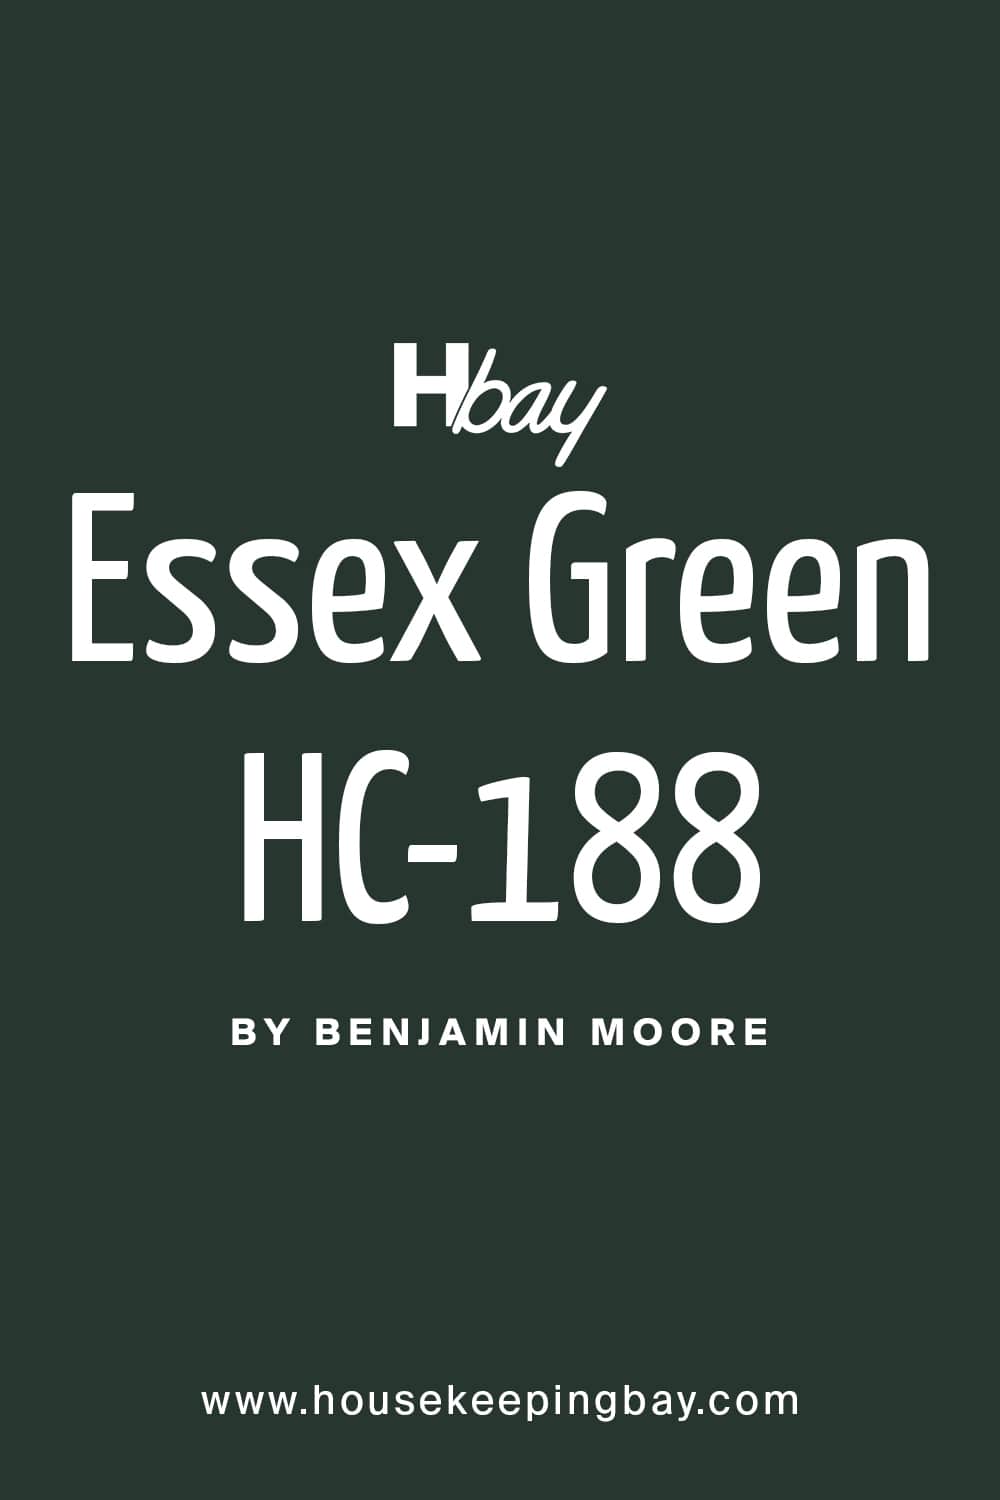 Essex Green HC-188 by Benjamin Moore